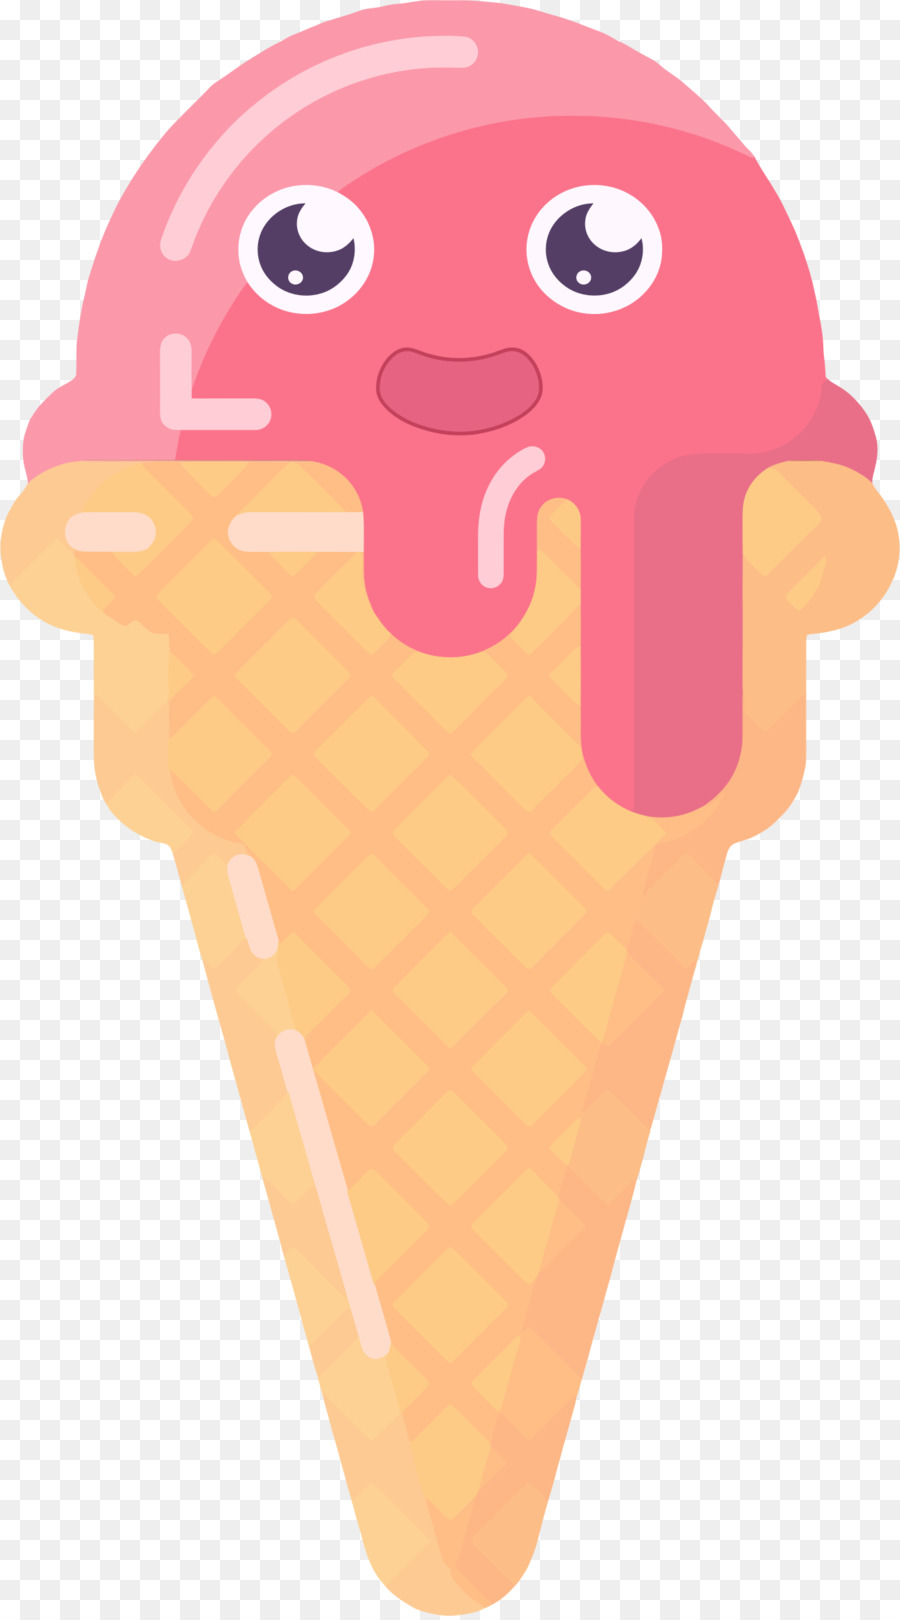 Ice Cream Cones Chocolate ice cream Clip art - cream clipart png download - 1290*2316 - Free Transparent Ice Cream Cones png Download.